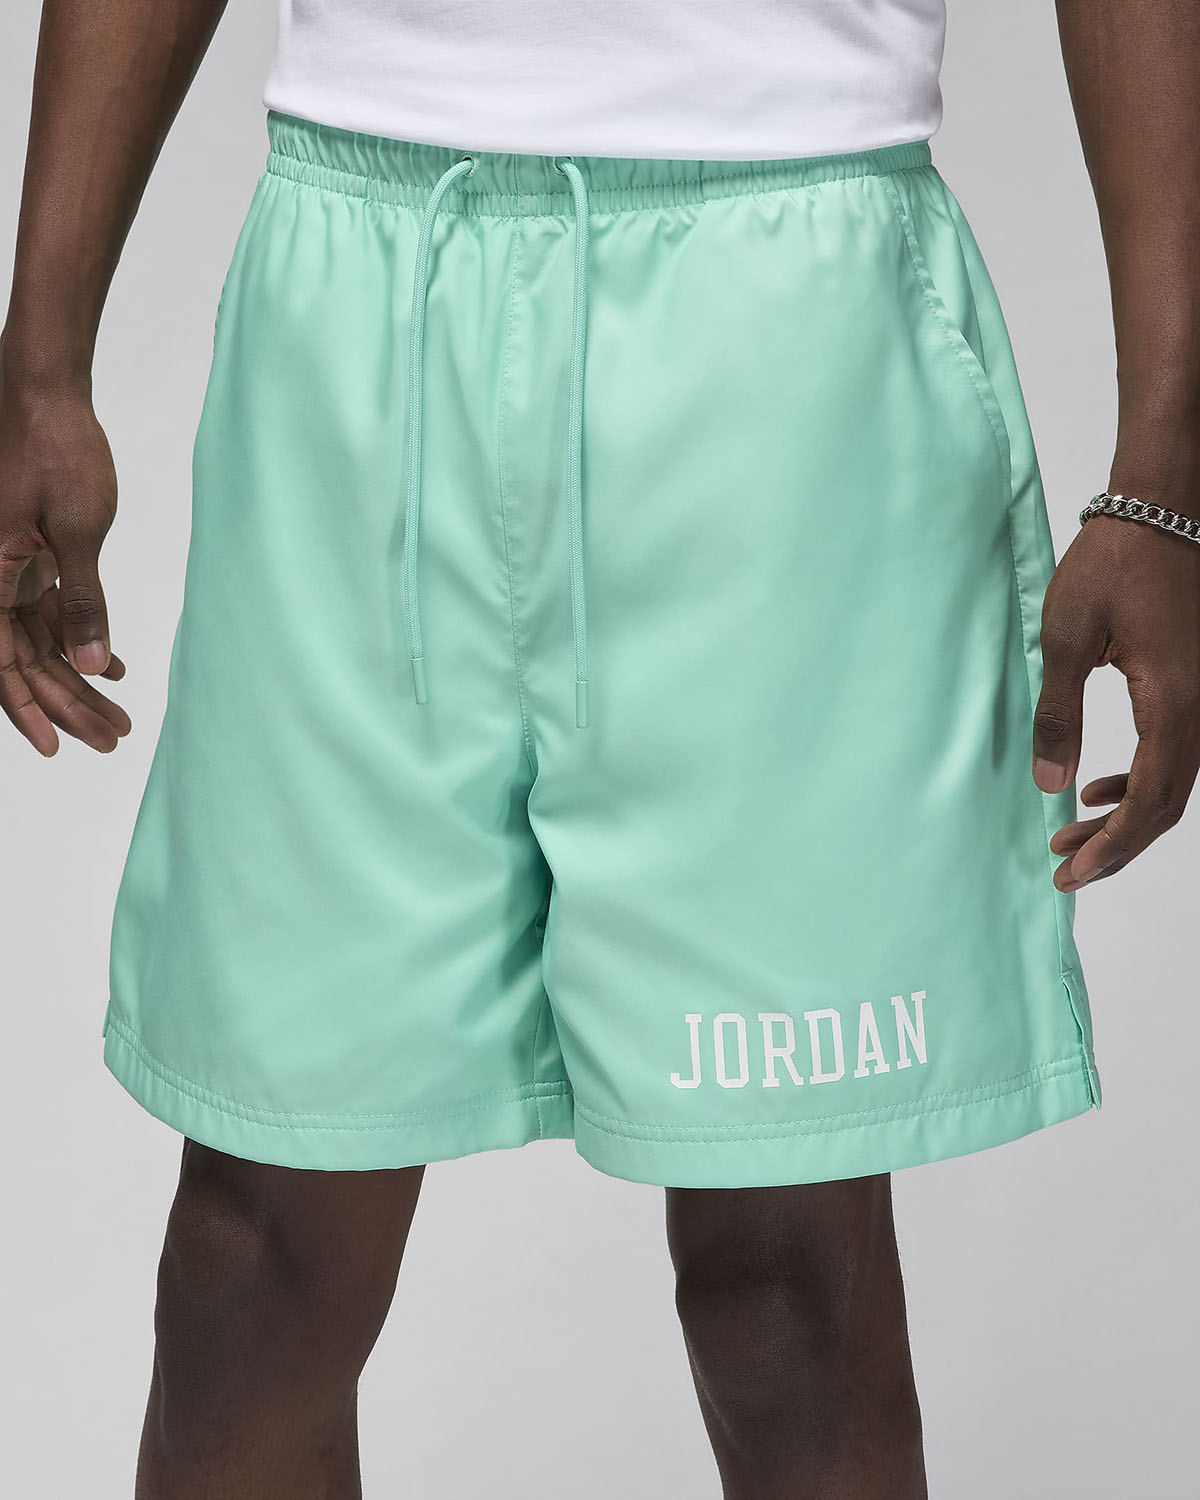 Mens Air Jordan 11 Comfort Low Basketball Shoes Emerald Rise 2